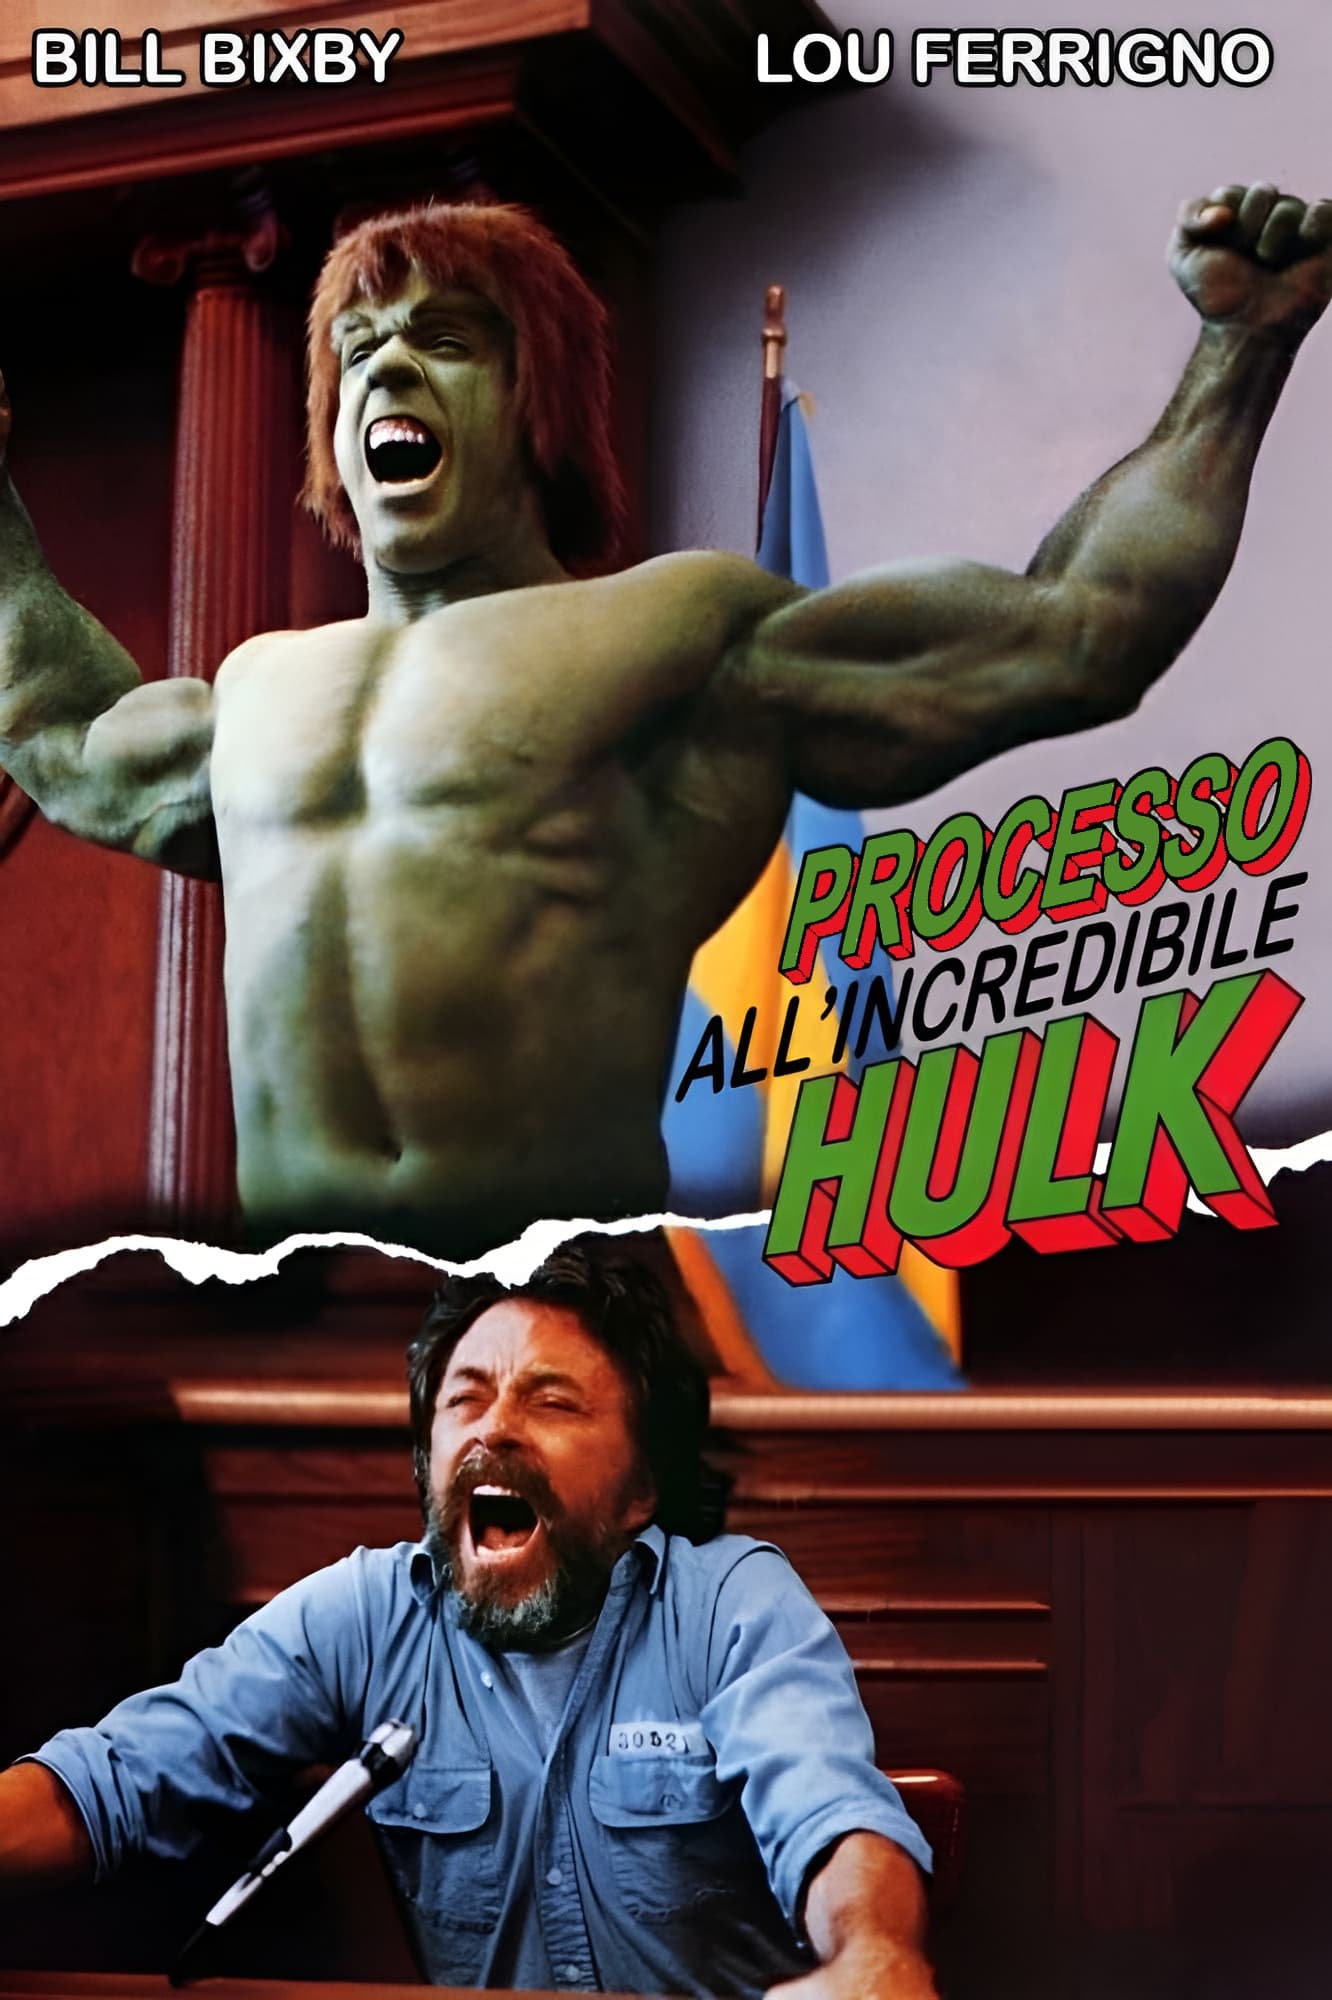 Processo all'incredibile Hulk film